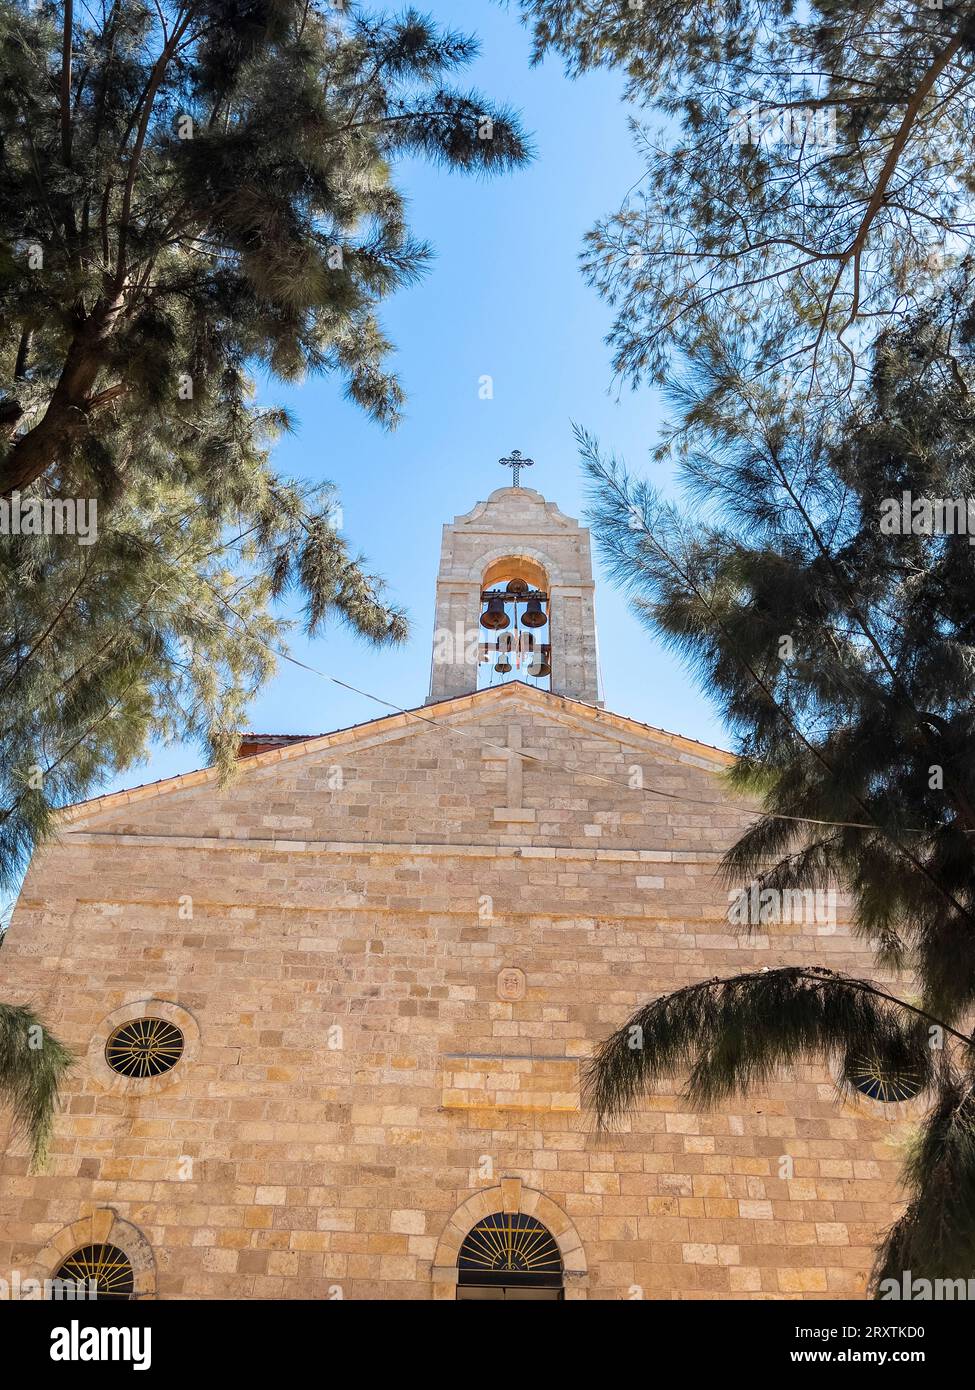 Vue extérieure de l'église byzantine primitive de Saint George à Madaba, Jordanie, Moyen-Orient Banque D'Images